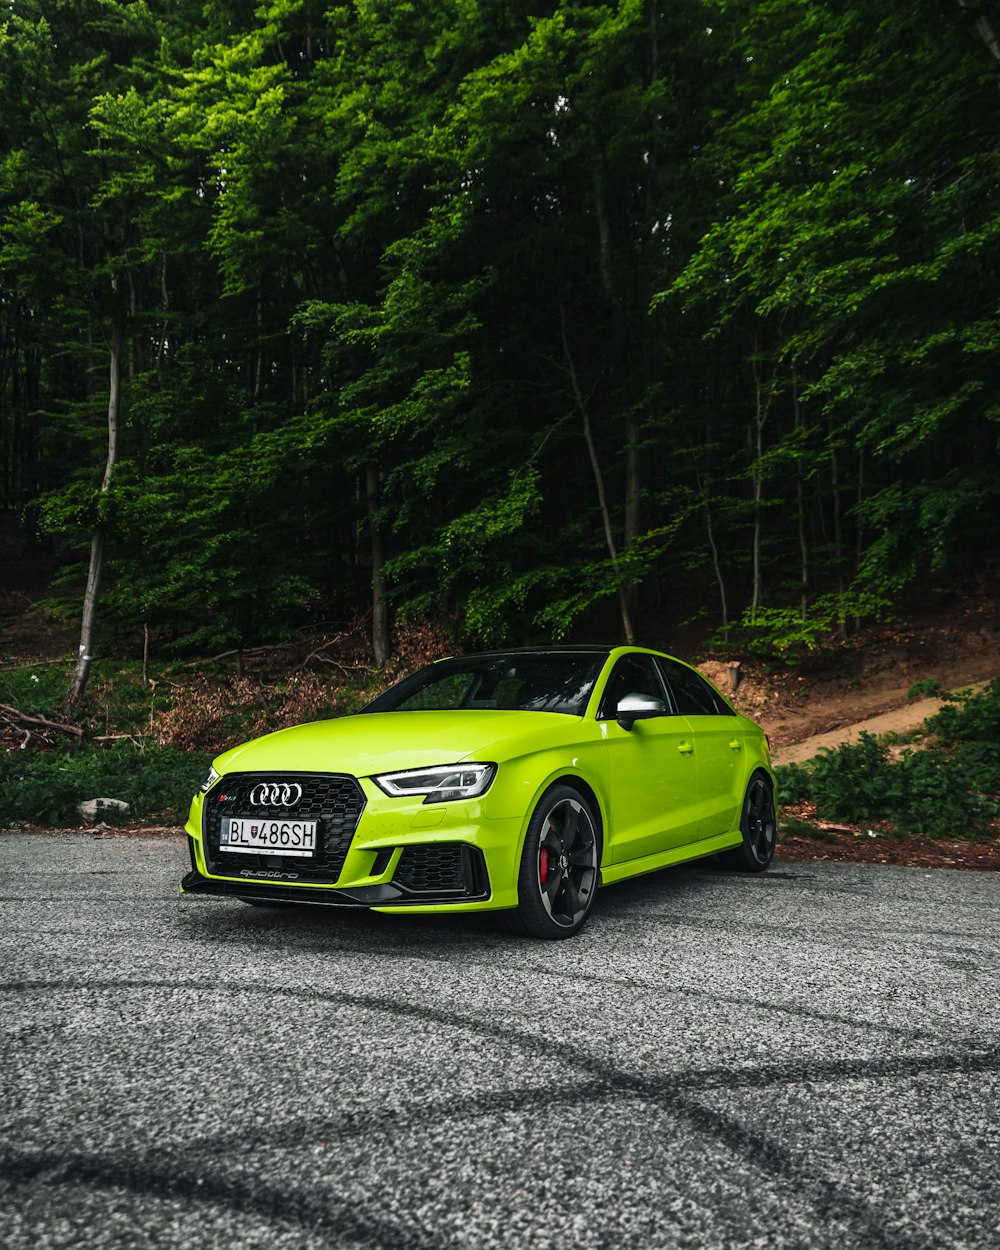 Audi coupé verde en la carretera durante el día